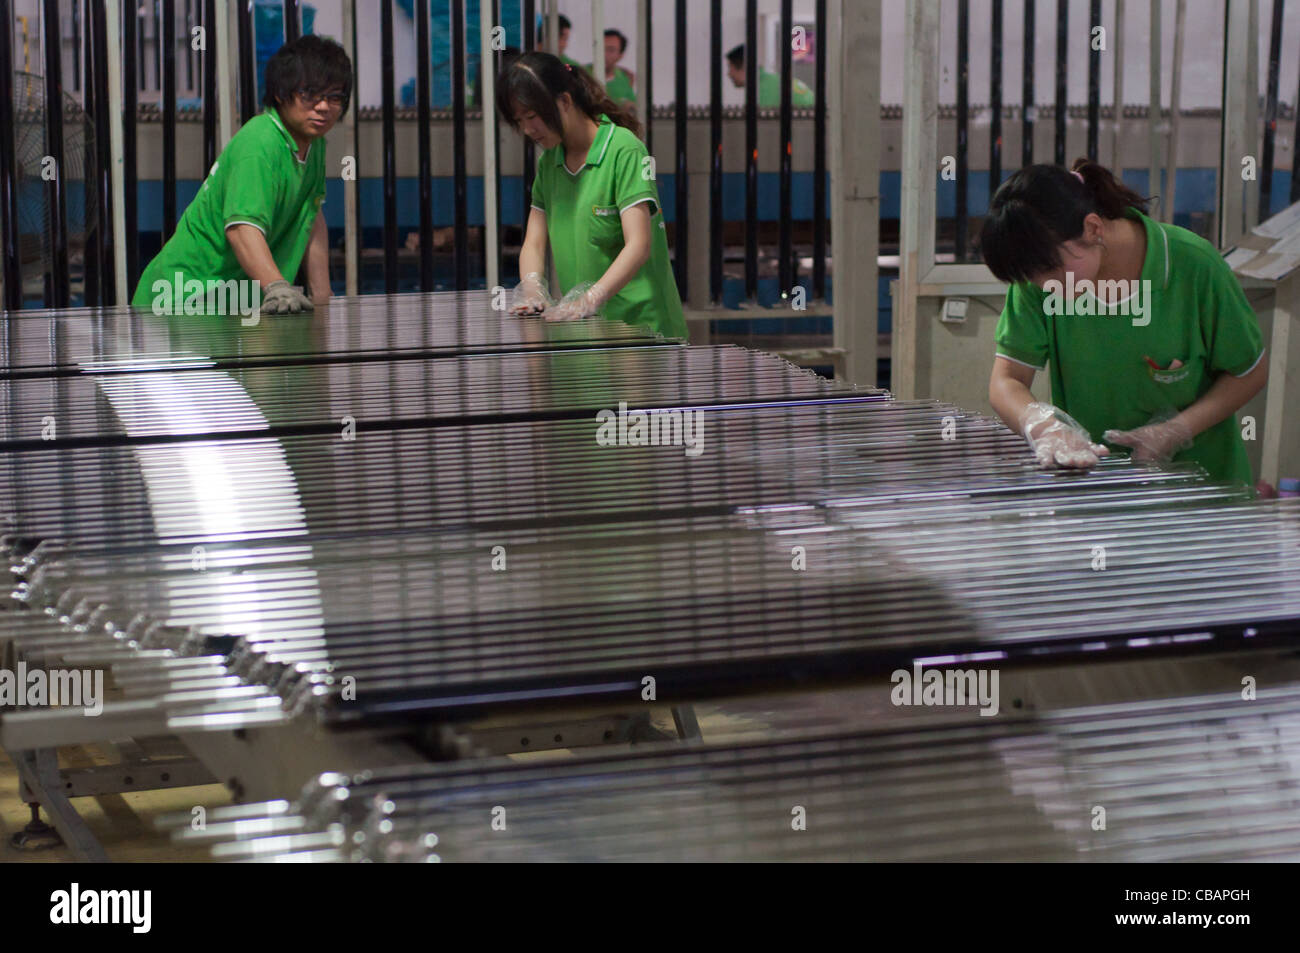 Travailleurs de Himin Solar Corporation, un chef de file chinois dans la production de chauffe-eau solaires. China Solar Valley, Dezhou, Shandong, Chine Banque D'Images